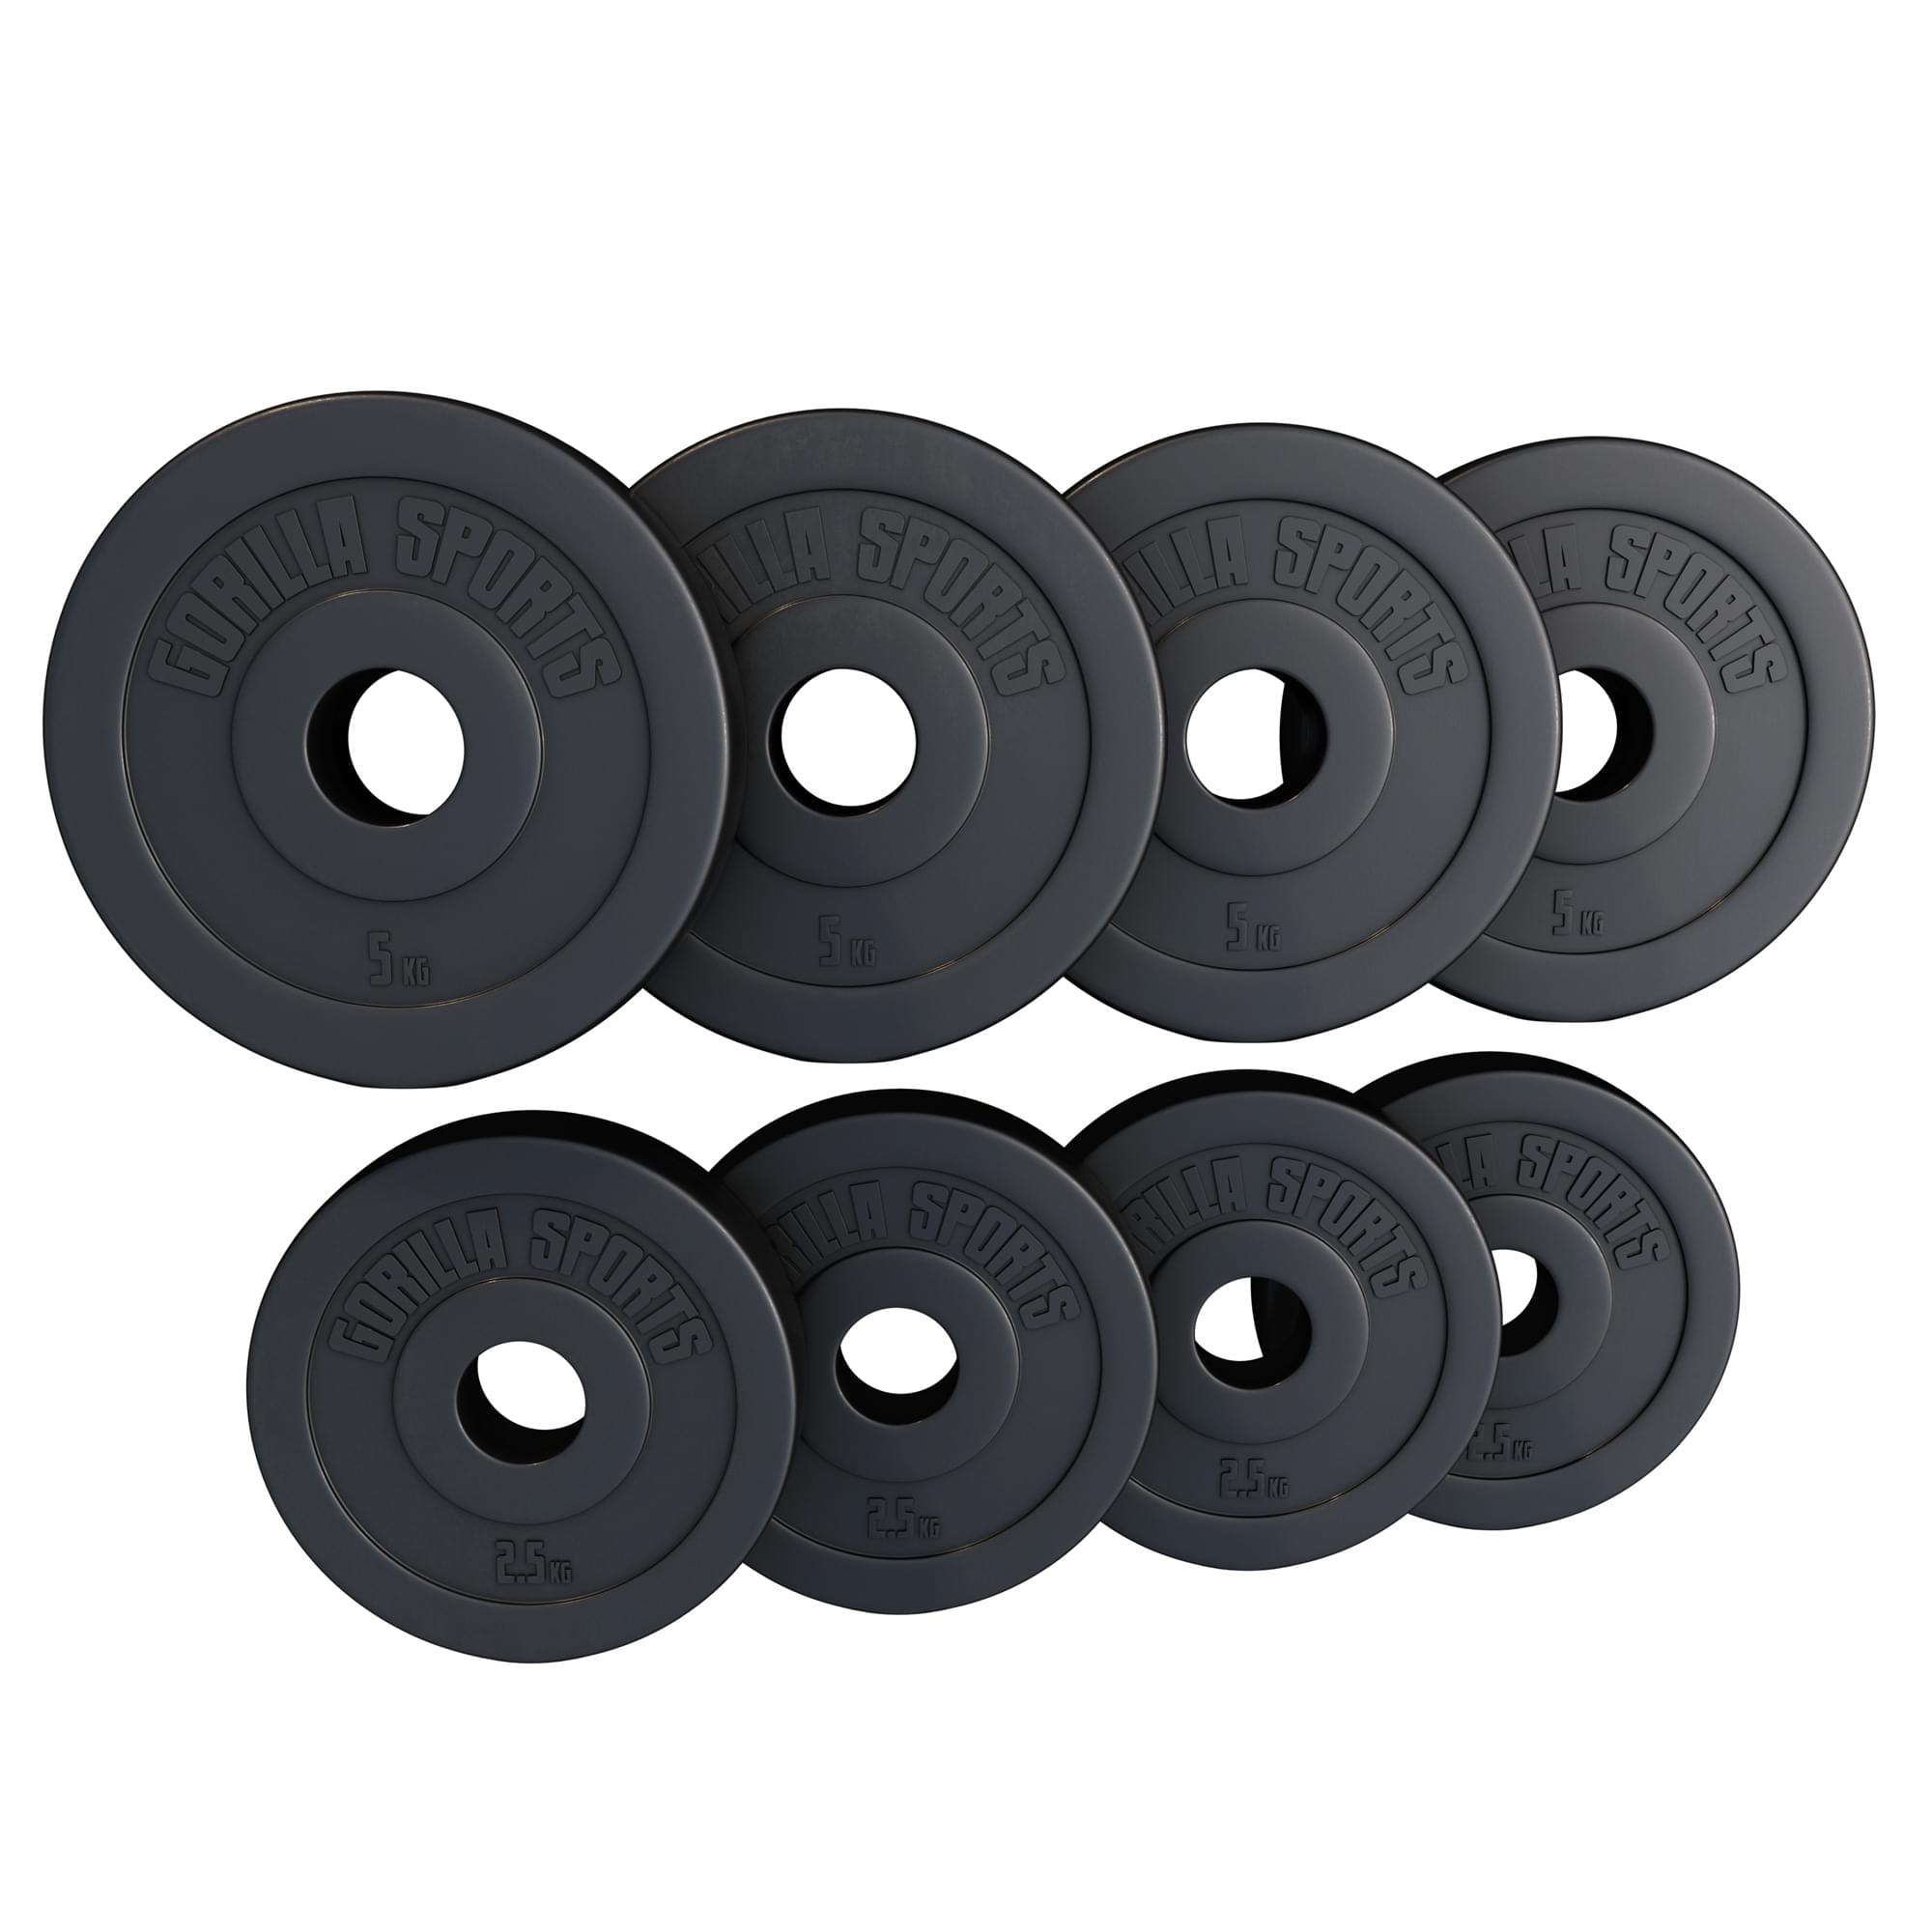 Lot de disques en plastique : 4 x 5 KG et 4 x 2,5 KG - 50/51 mm